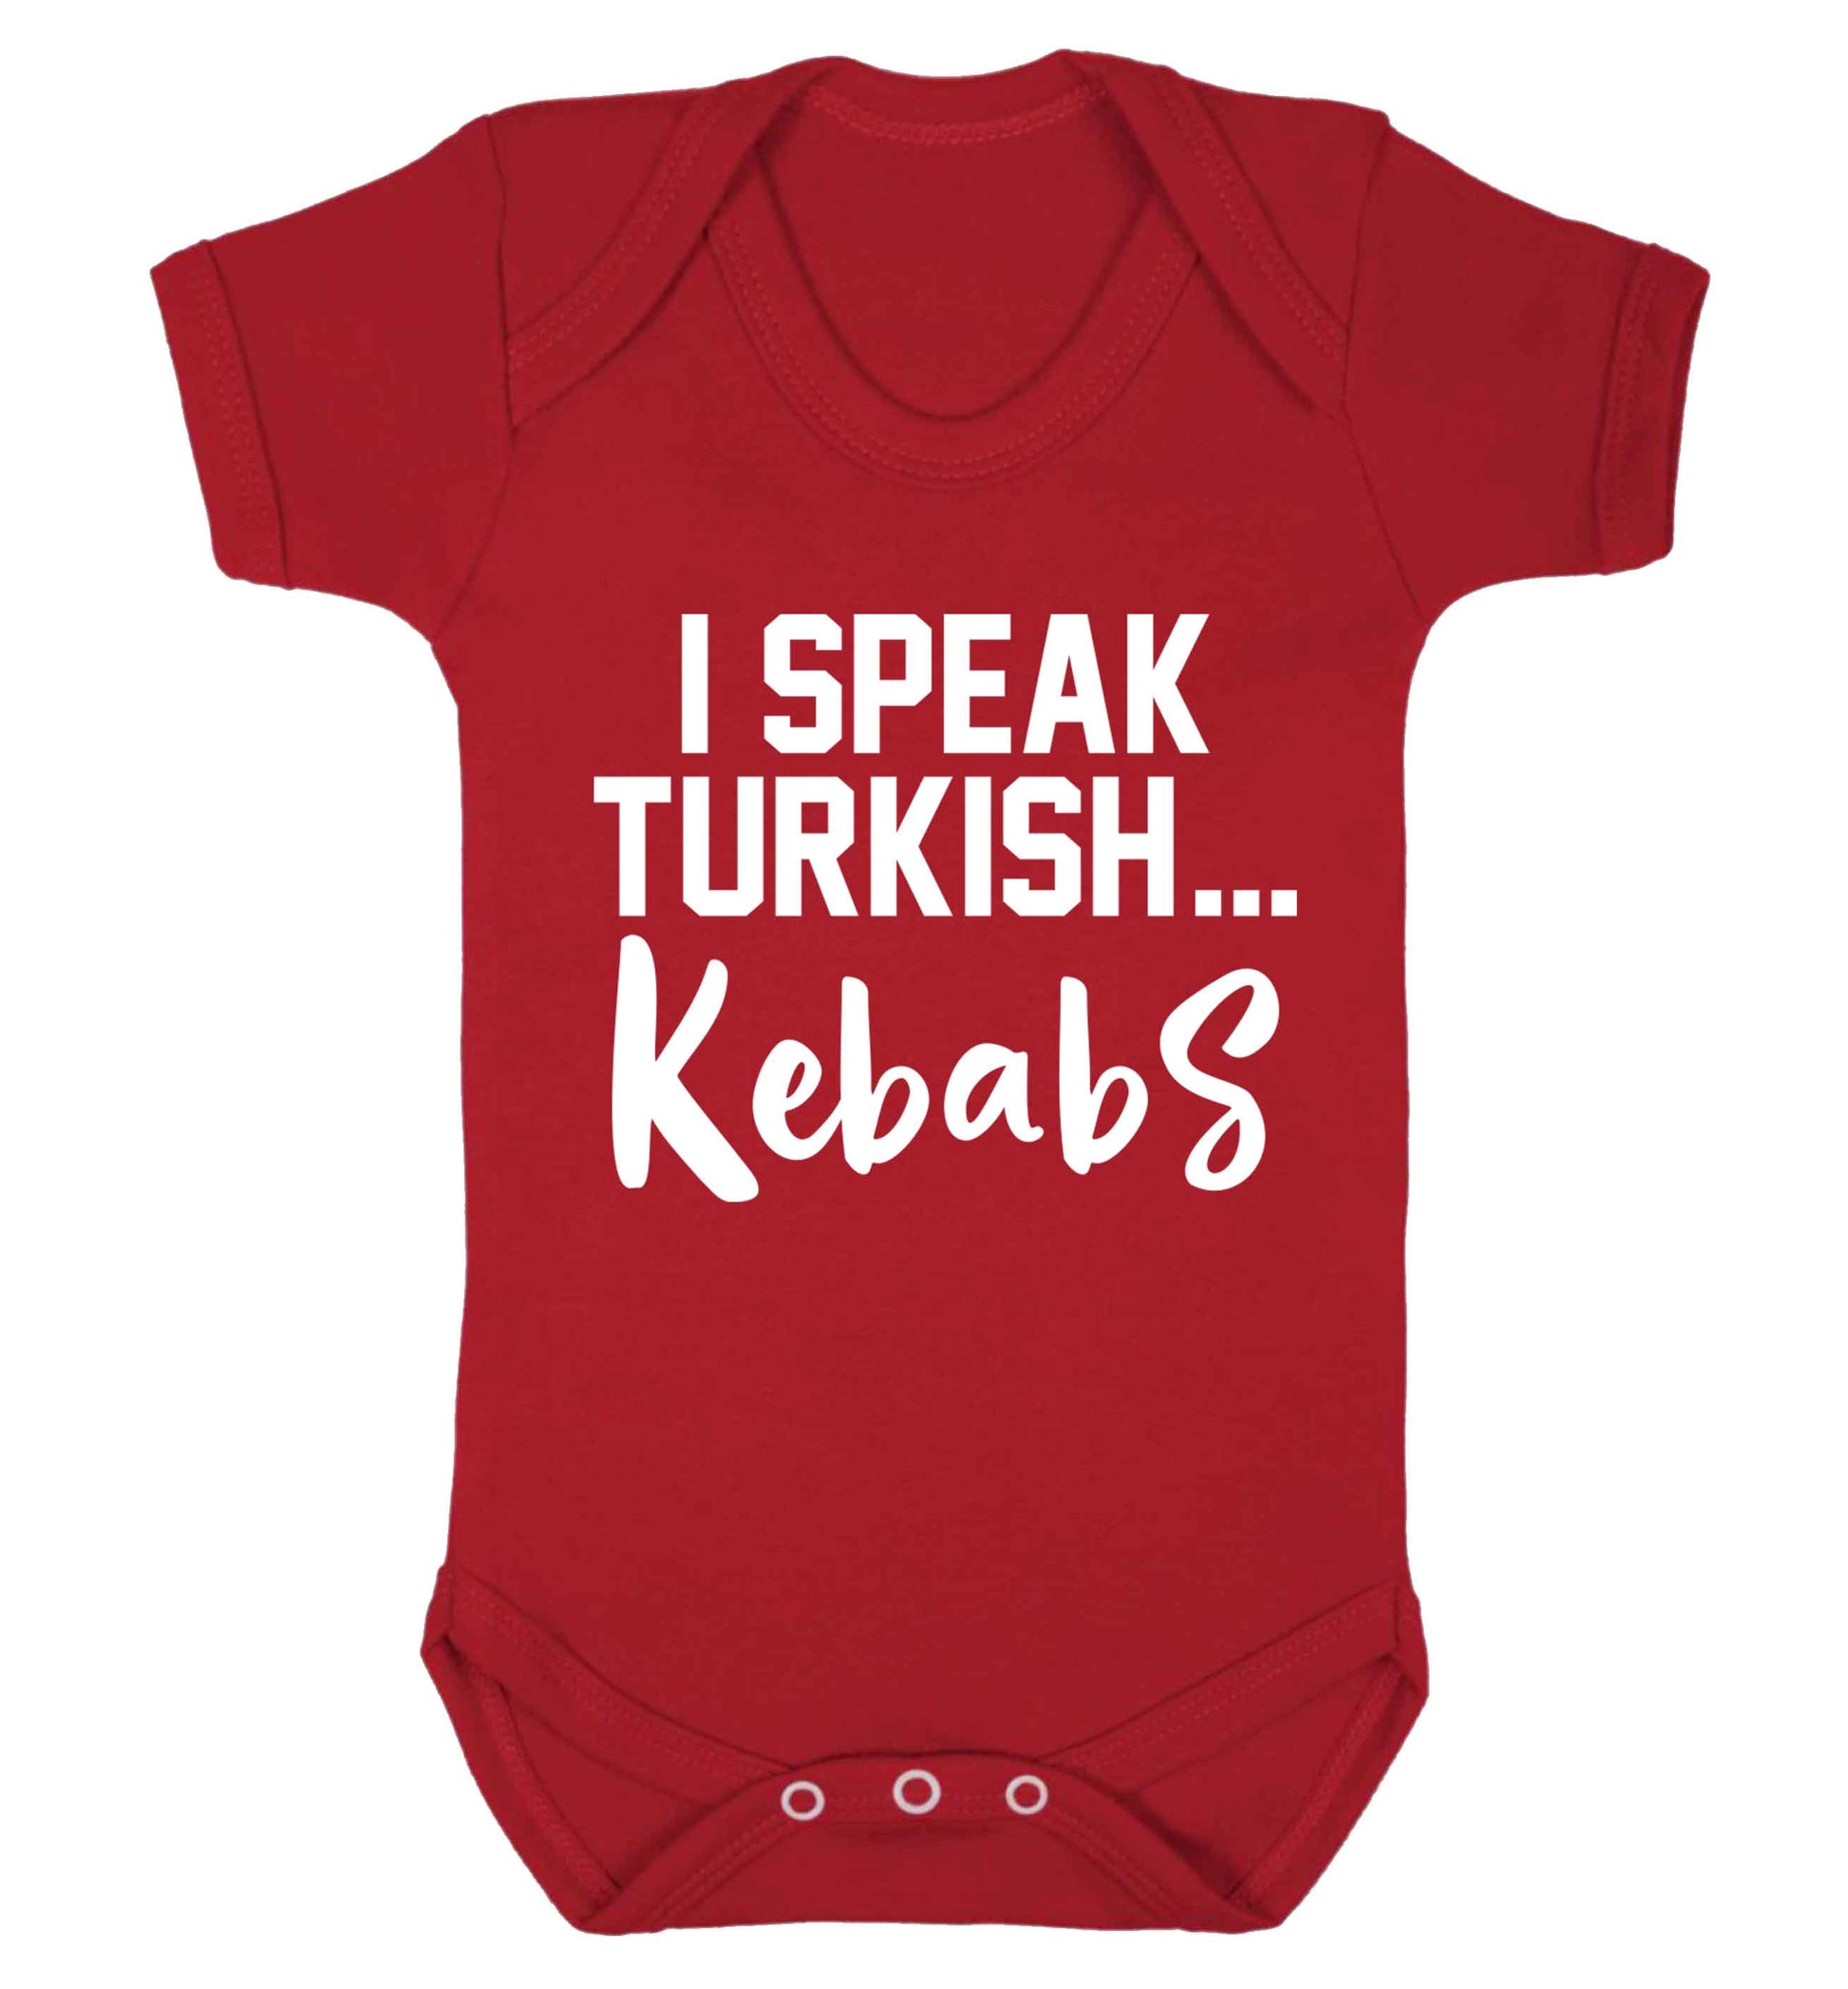 I speak Turkish...kebabs Baby Vest red 18-24 months